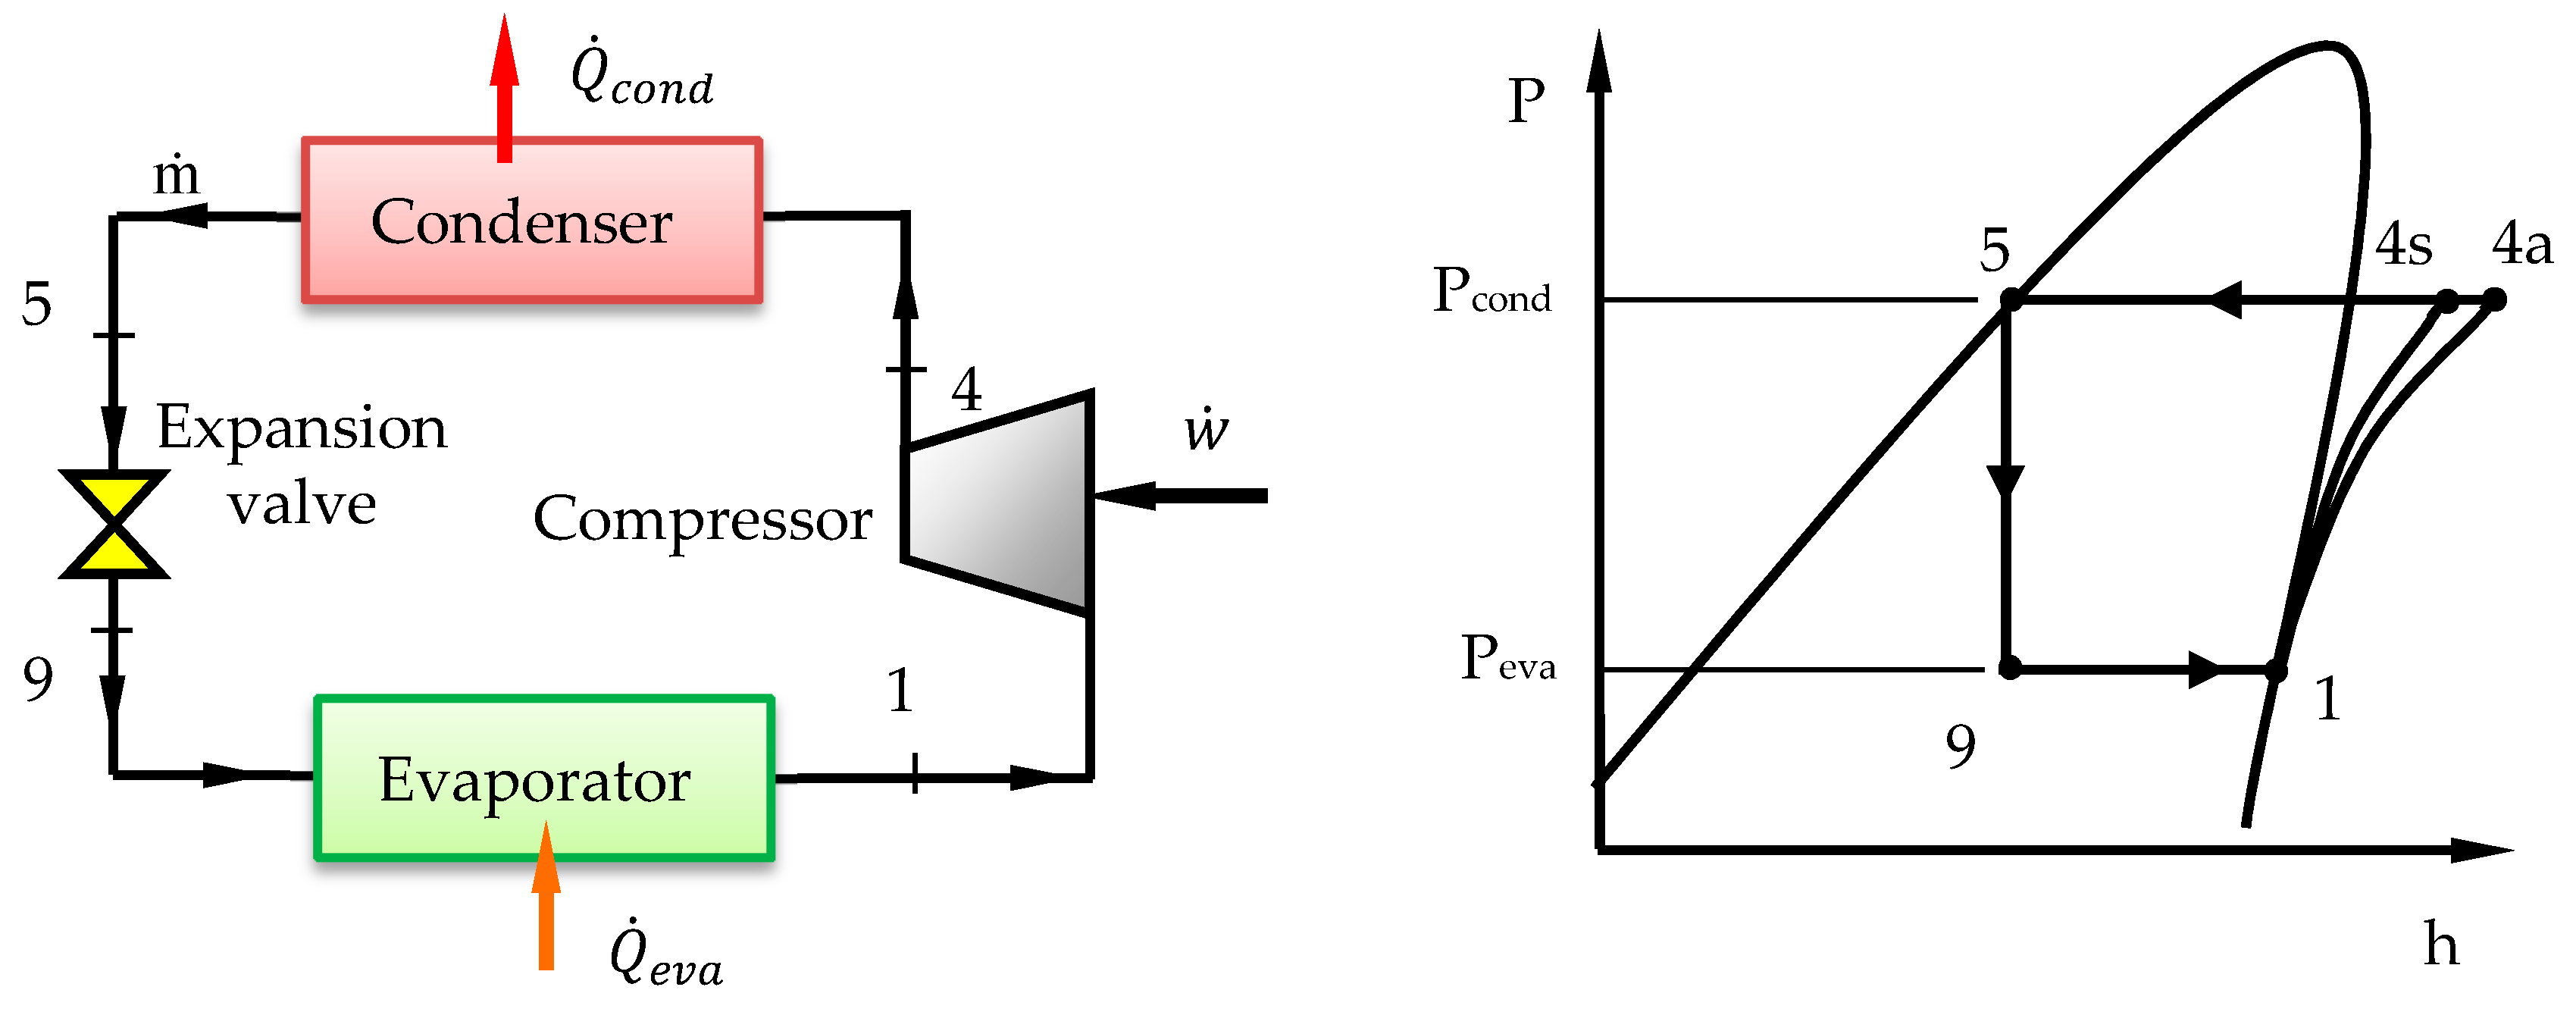 Compression Pressure Chart